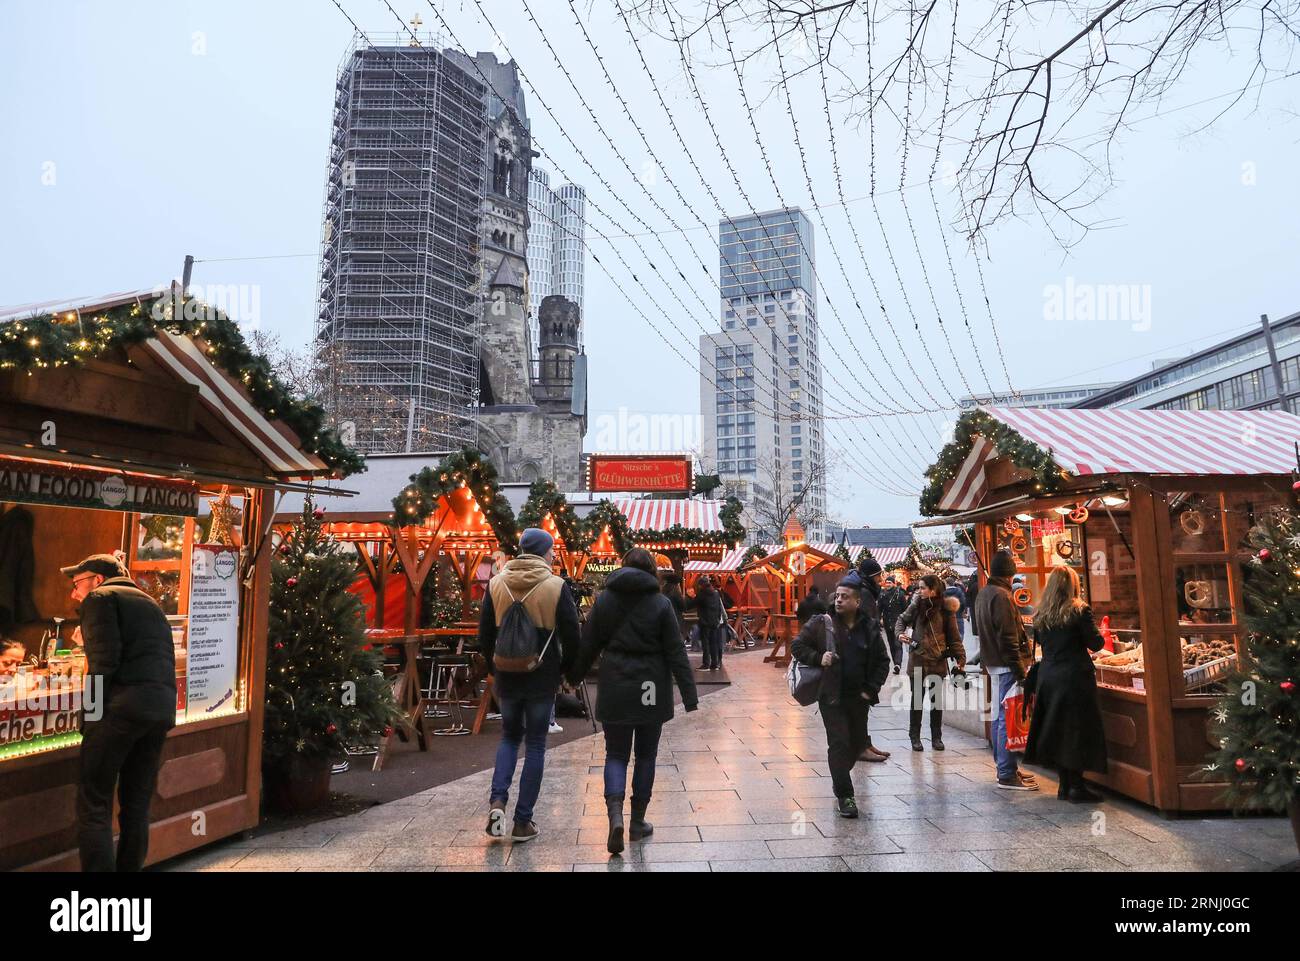 Anschlag in Berlin - Wiedereröffnung Weihnachtsmarkt am Breitscheidplatz (161222) -- BERLIN, 22. Dezember 2016 -- Menschen spazieren auf dem wiedereröffneten Weihnachtsmarkt am Breitscheid-Platz in Berlin, Hauptstadt Deutschlands, am 22. Dezember 2016. Der Weihnachtsmarkt hier wurde am Montag angegriffen und am Donnerstag wieder eröffnet. ) (gl) DEUTSCHLAND-BERLIN-ANGEGRIFFEN WEIHNACHTSMARKT-WIEDERERÖFFNUNG ShanxYuqi PUBLICATIONxNOTxINxCHN Halt in Berlin Wiedereröffnung Weihnachtsmarkt bei Verwaltungen Berlin DEC 22 2016 Prominente spazieren AUF dem wiedereröffneten Weihnachtsmarkt AM Breitscheid-Platz in der Berliner Hauptstadt AM DEC 2 Stockfoto